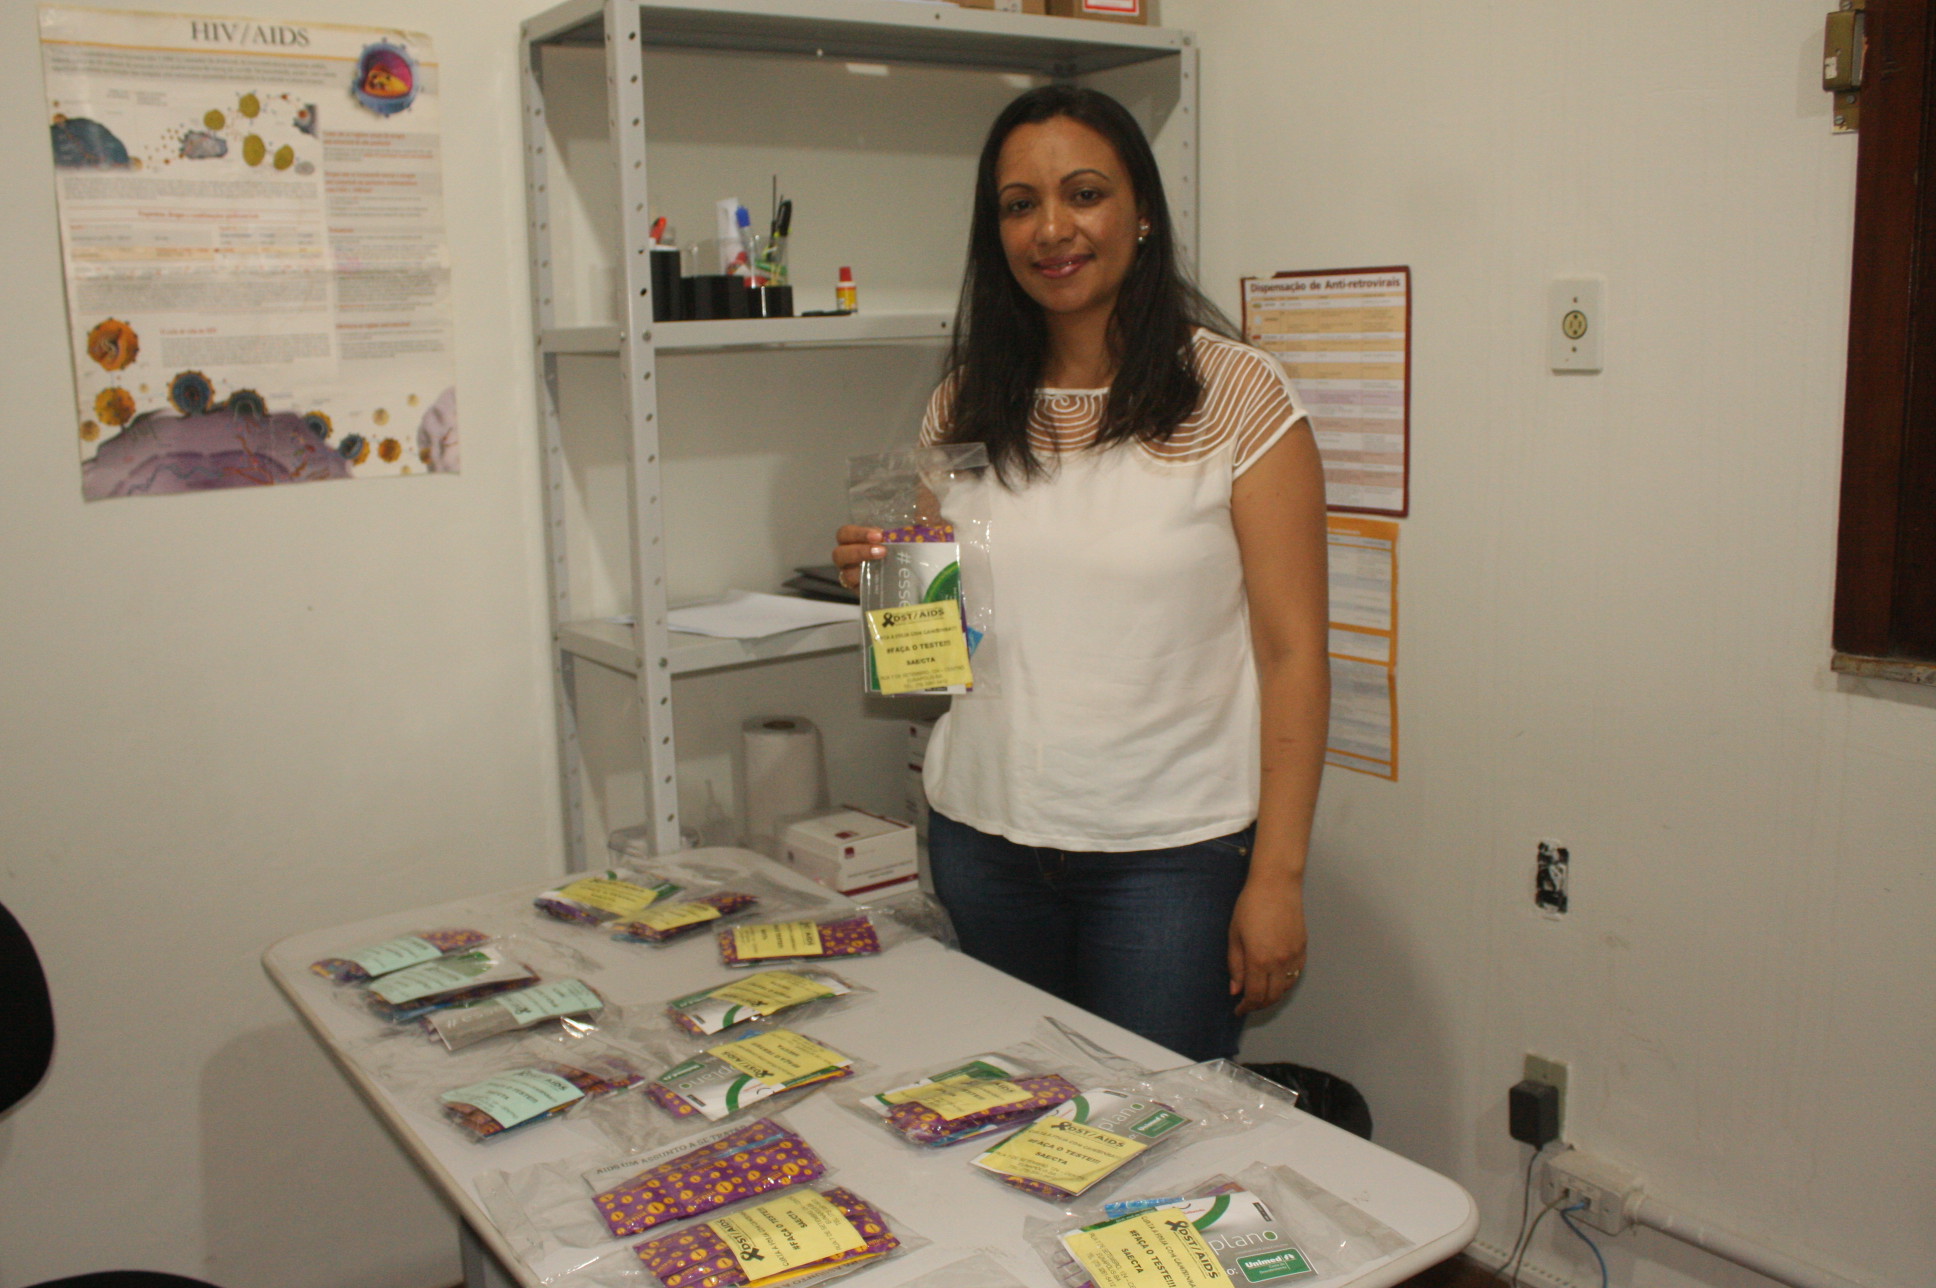 Saúde distribuiu kits de prevenção contra DST/AIDS durante o Carnaval 5